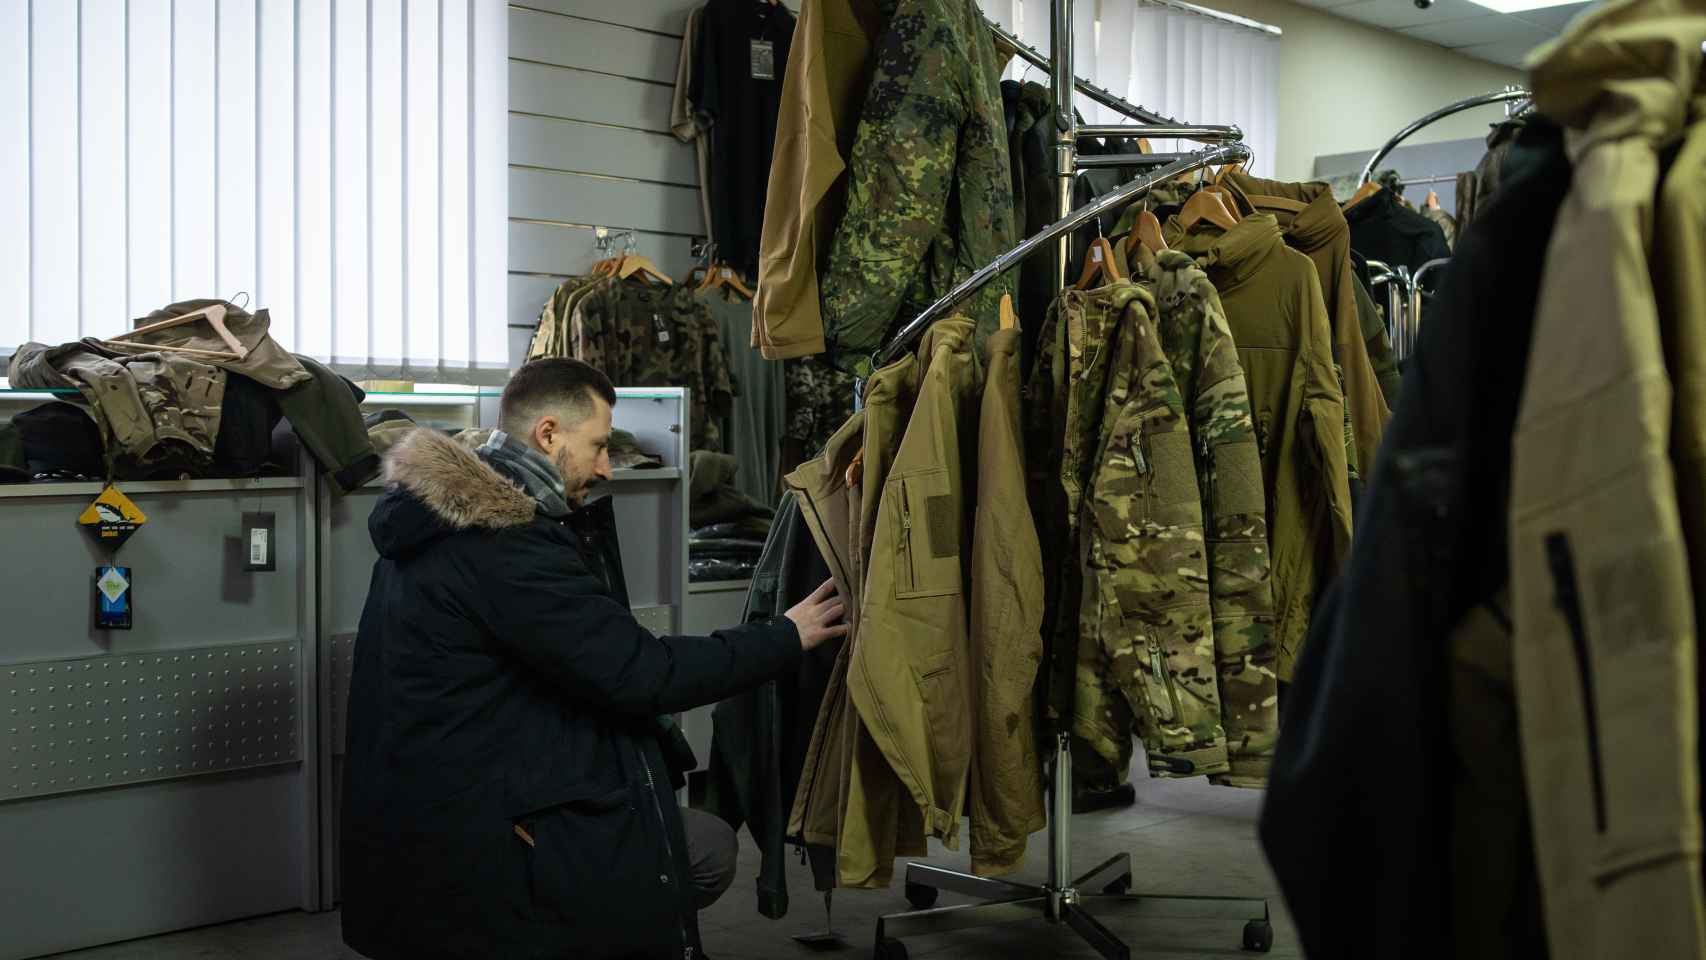 Vasil busca chaquetas y abrigos que le pueden servir en caso de tener que sumarse a las defensas territoriales de Lviv.